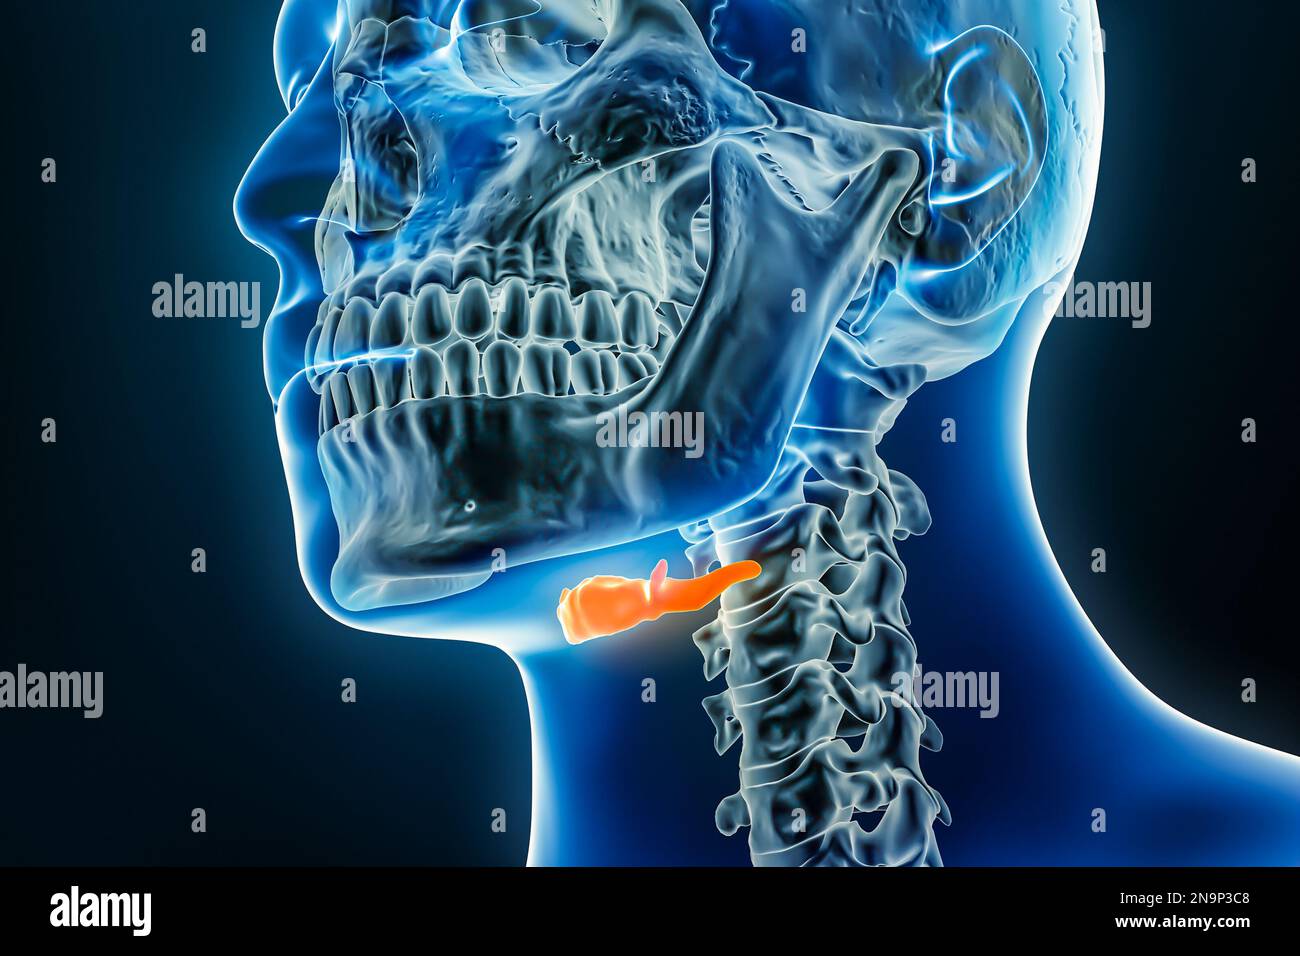 Röntgen des Zungenbeins 3D-Rendering-Darstellung mit männlichen Körperkonturen. Menschliche Anatomie, Osteologie, Skelettsystem, Medizin, Biologie, Wissenschaft, Gesundheitswesen Stockfoto